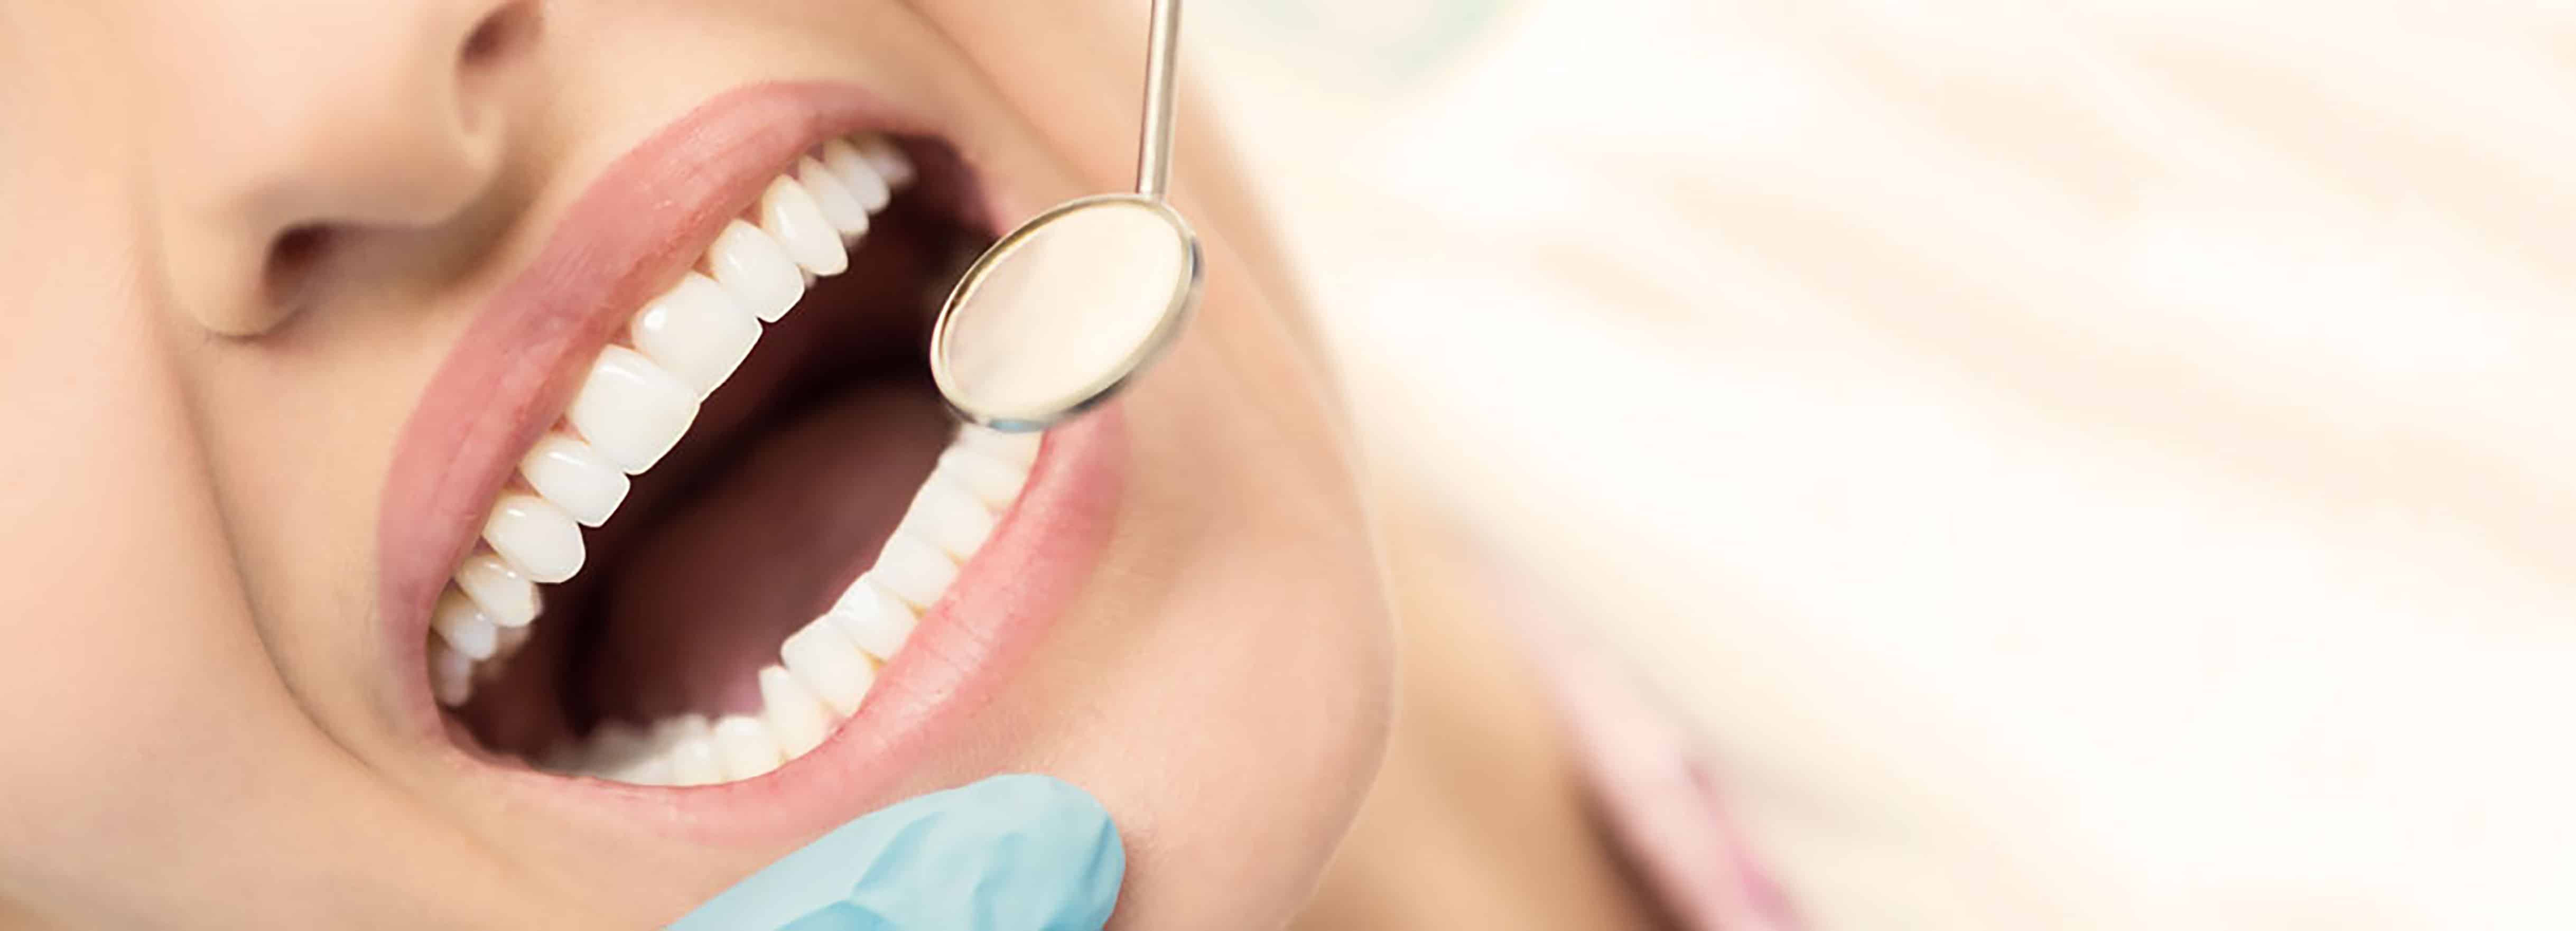 сколько стоит ультразвуковое отбеливание зубов